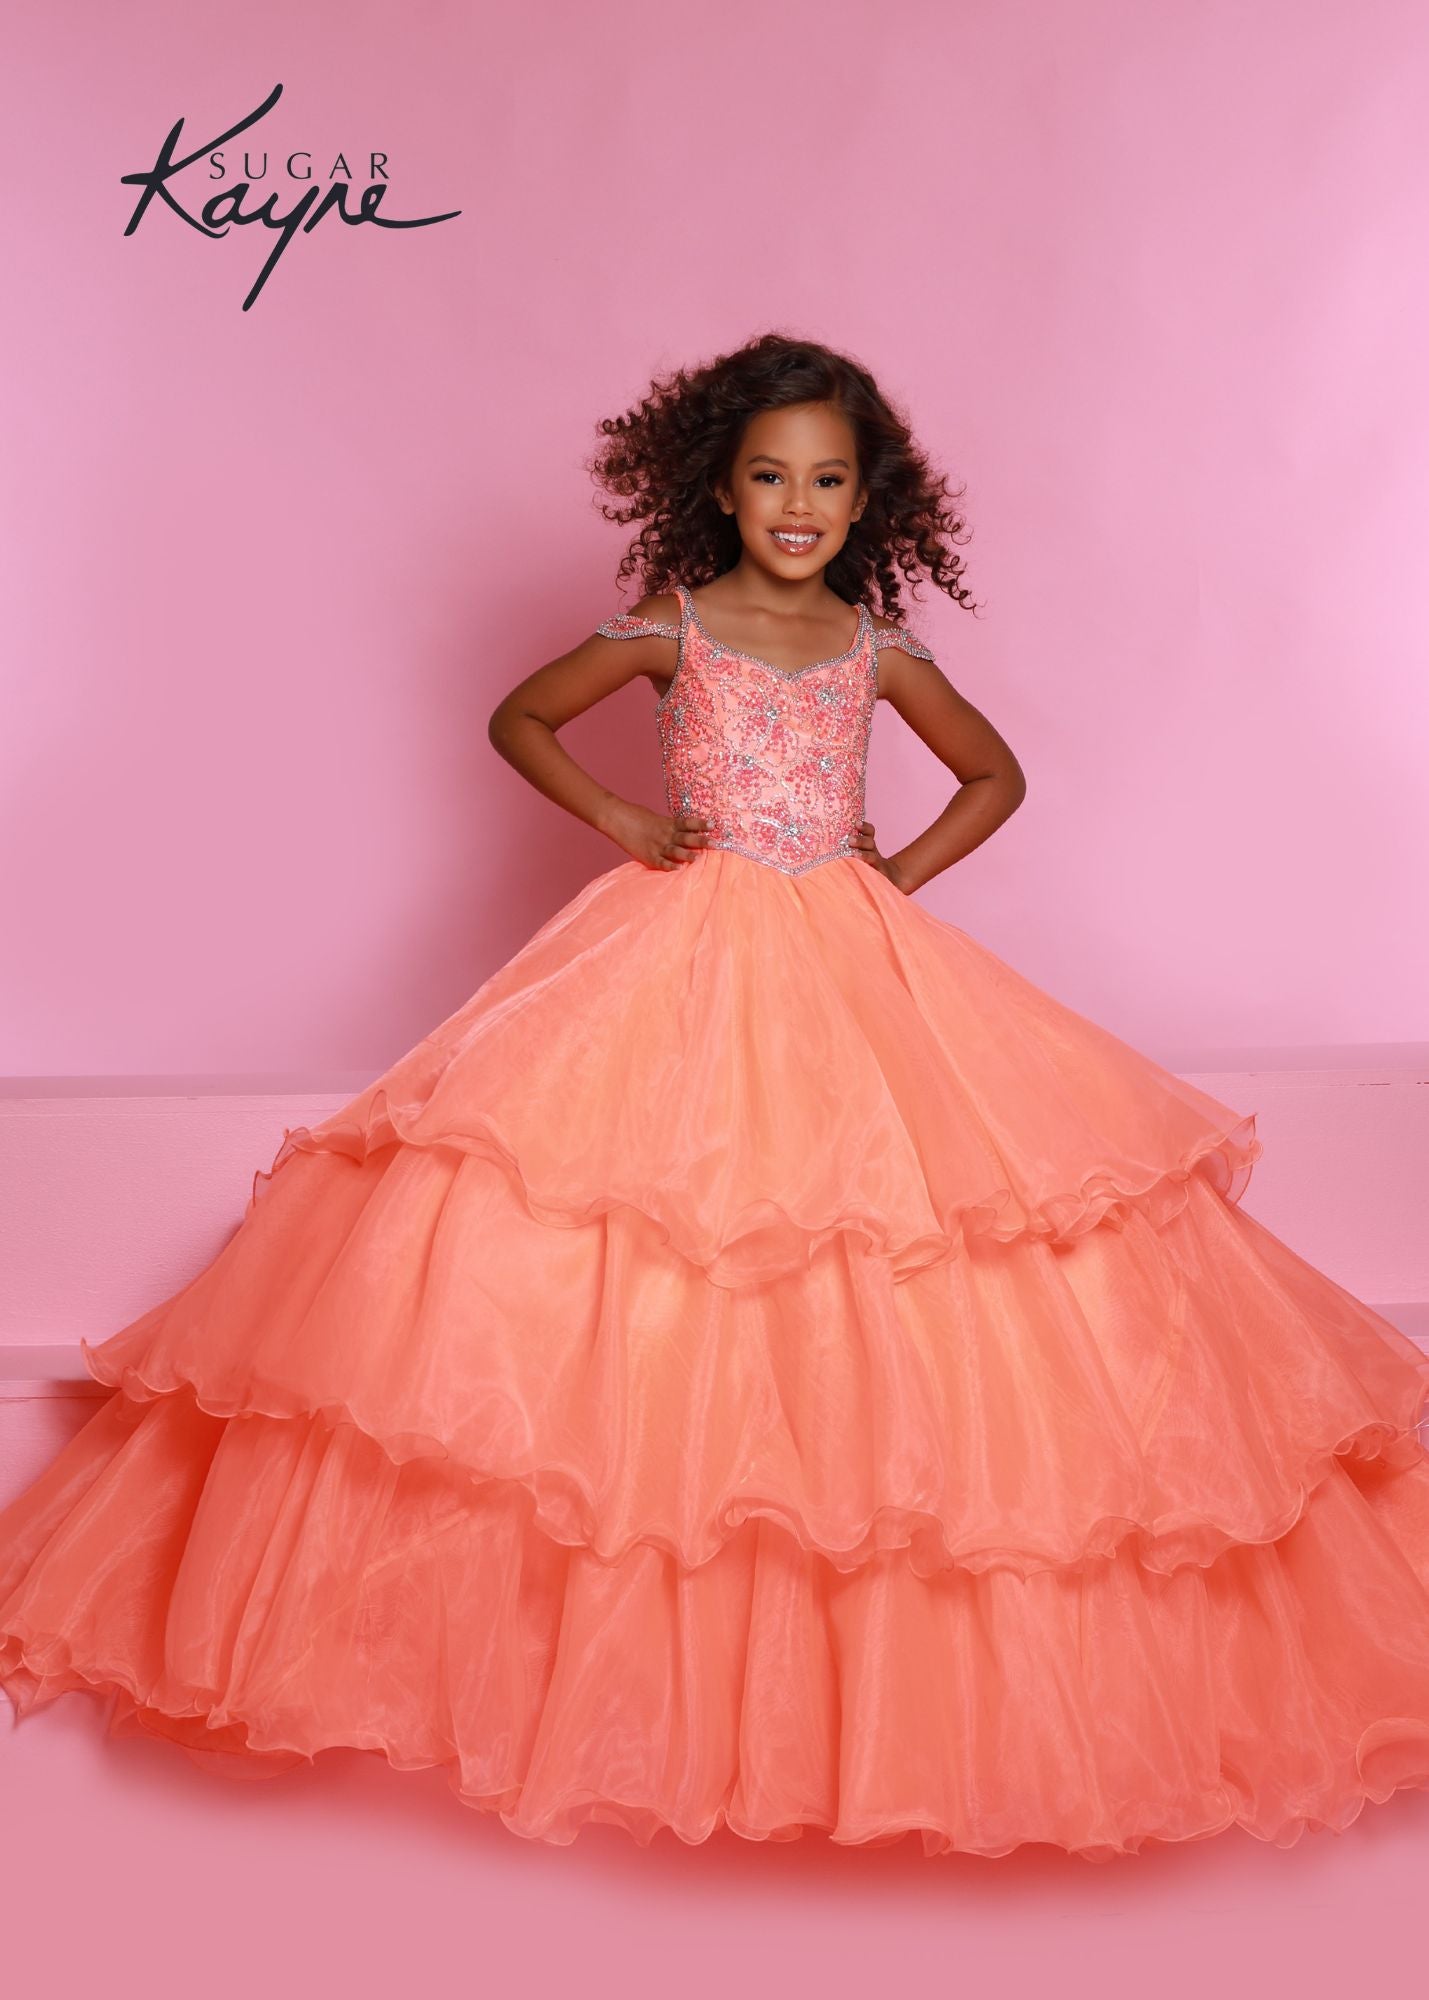 iDO Girls Pink Ruffle Skirt | Junior Couture USA